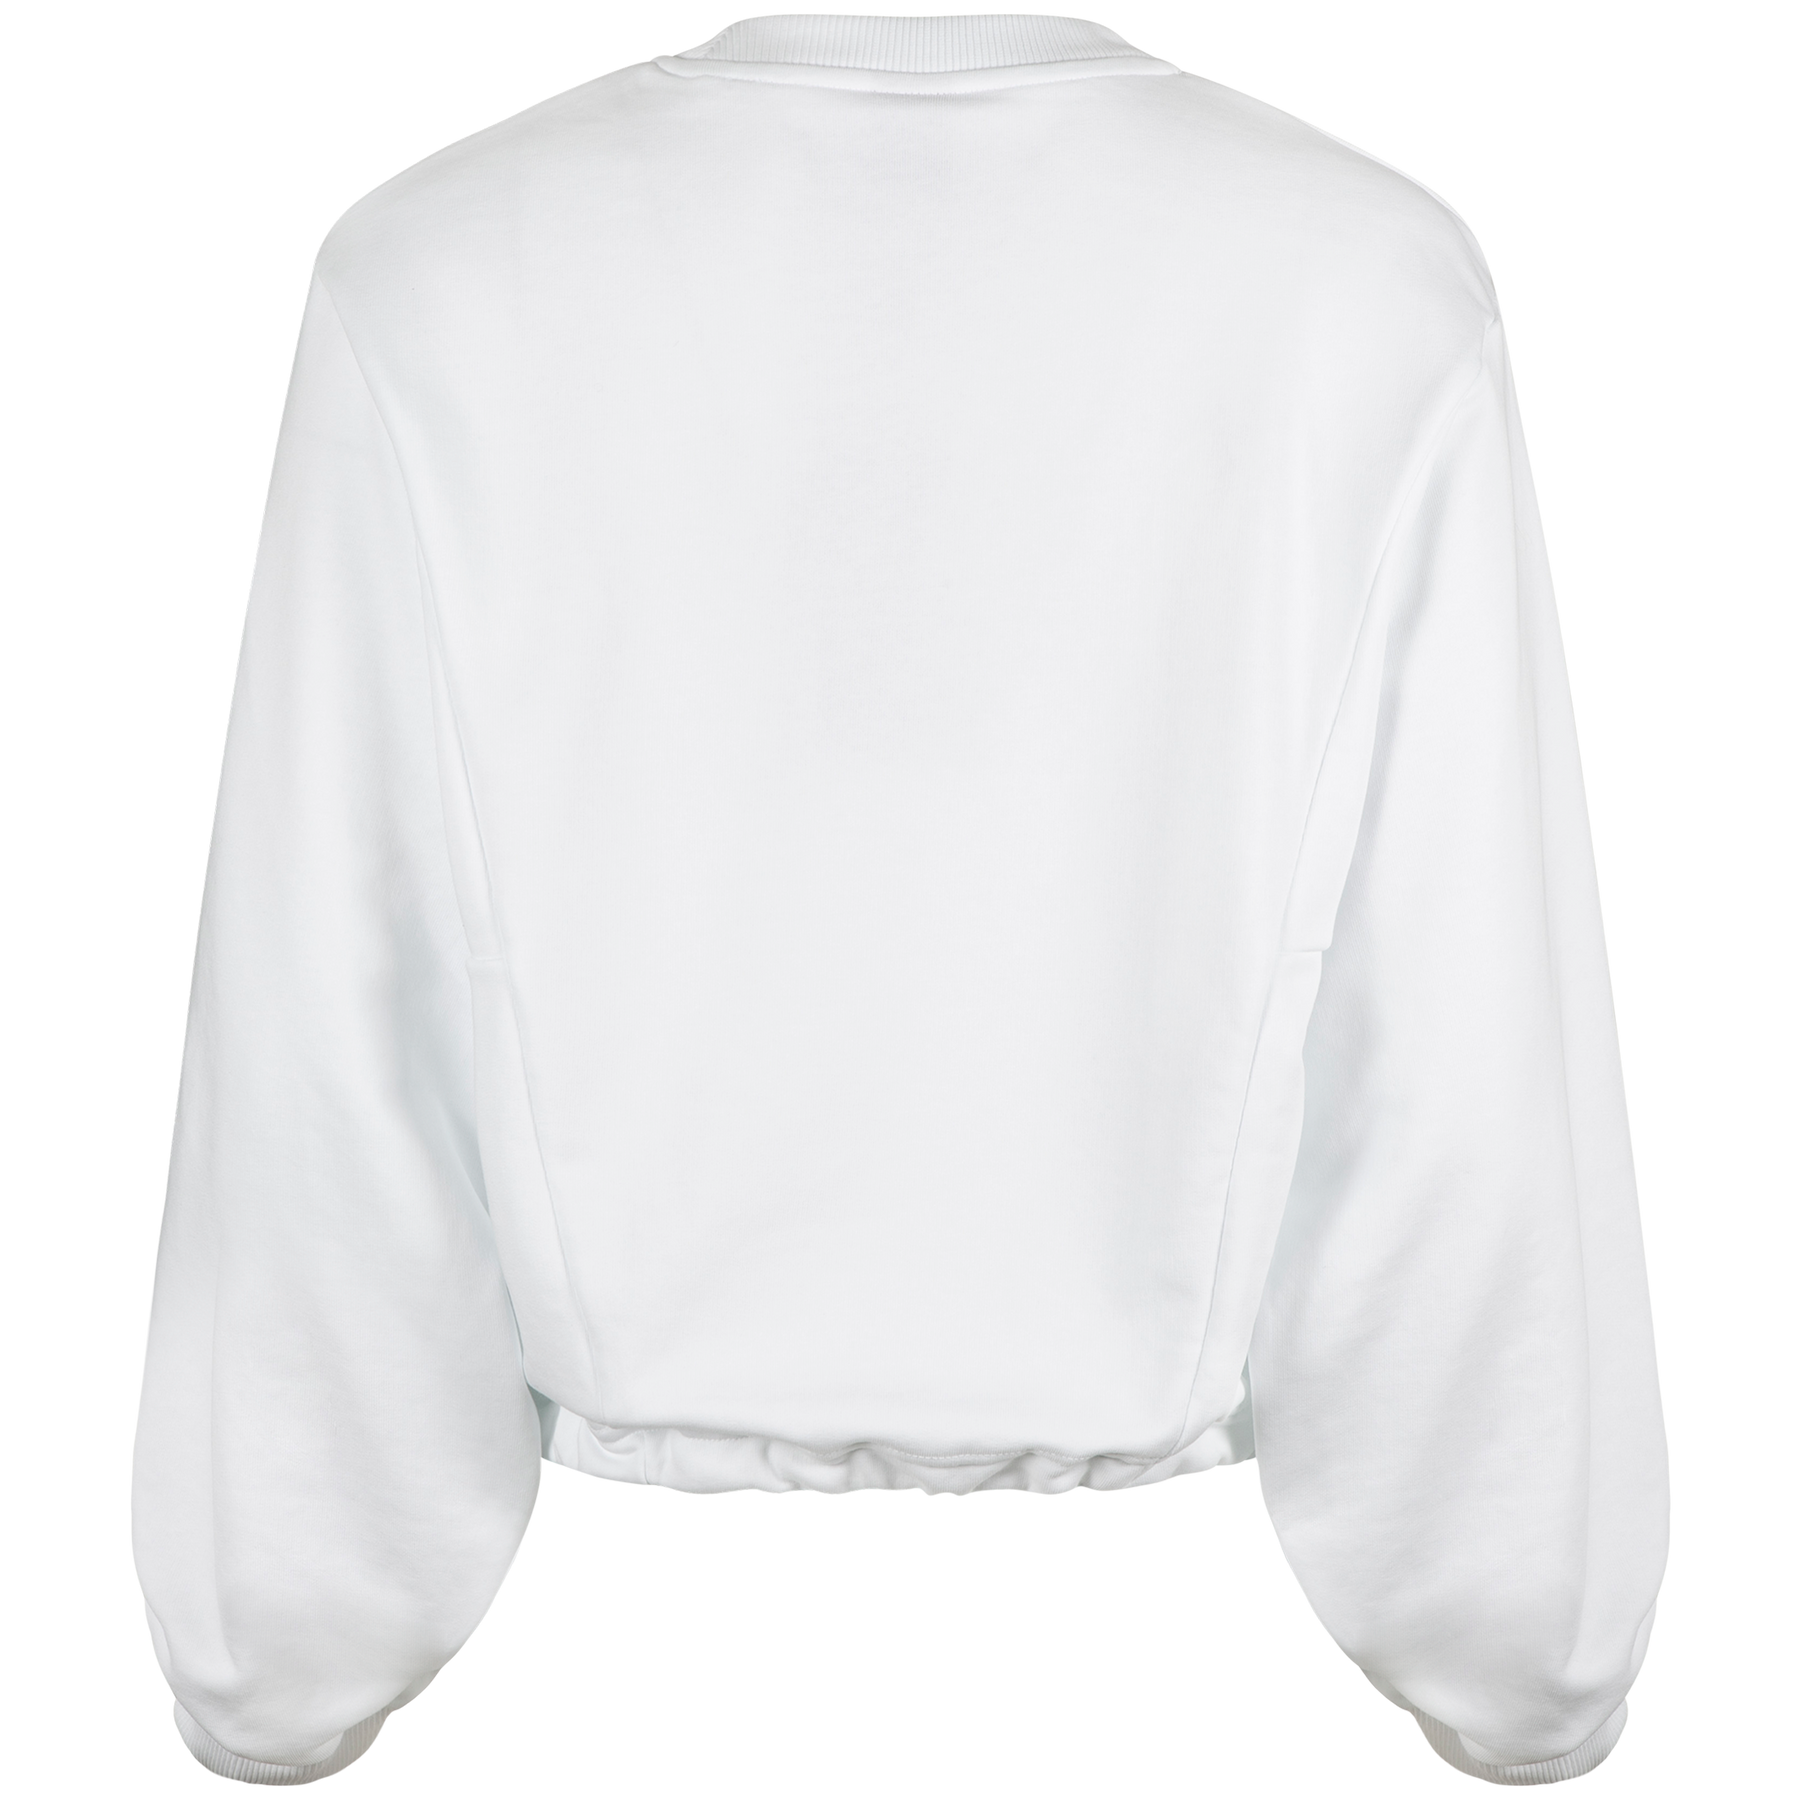 9015 Crew Neck Sweatshirt - White